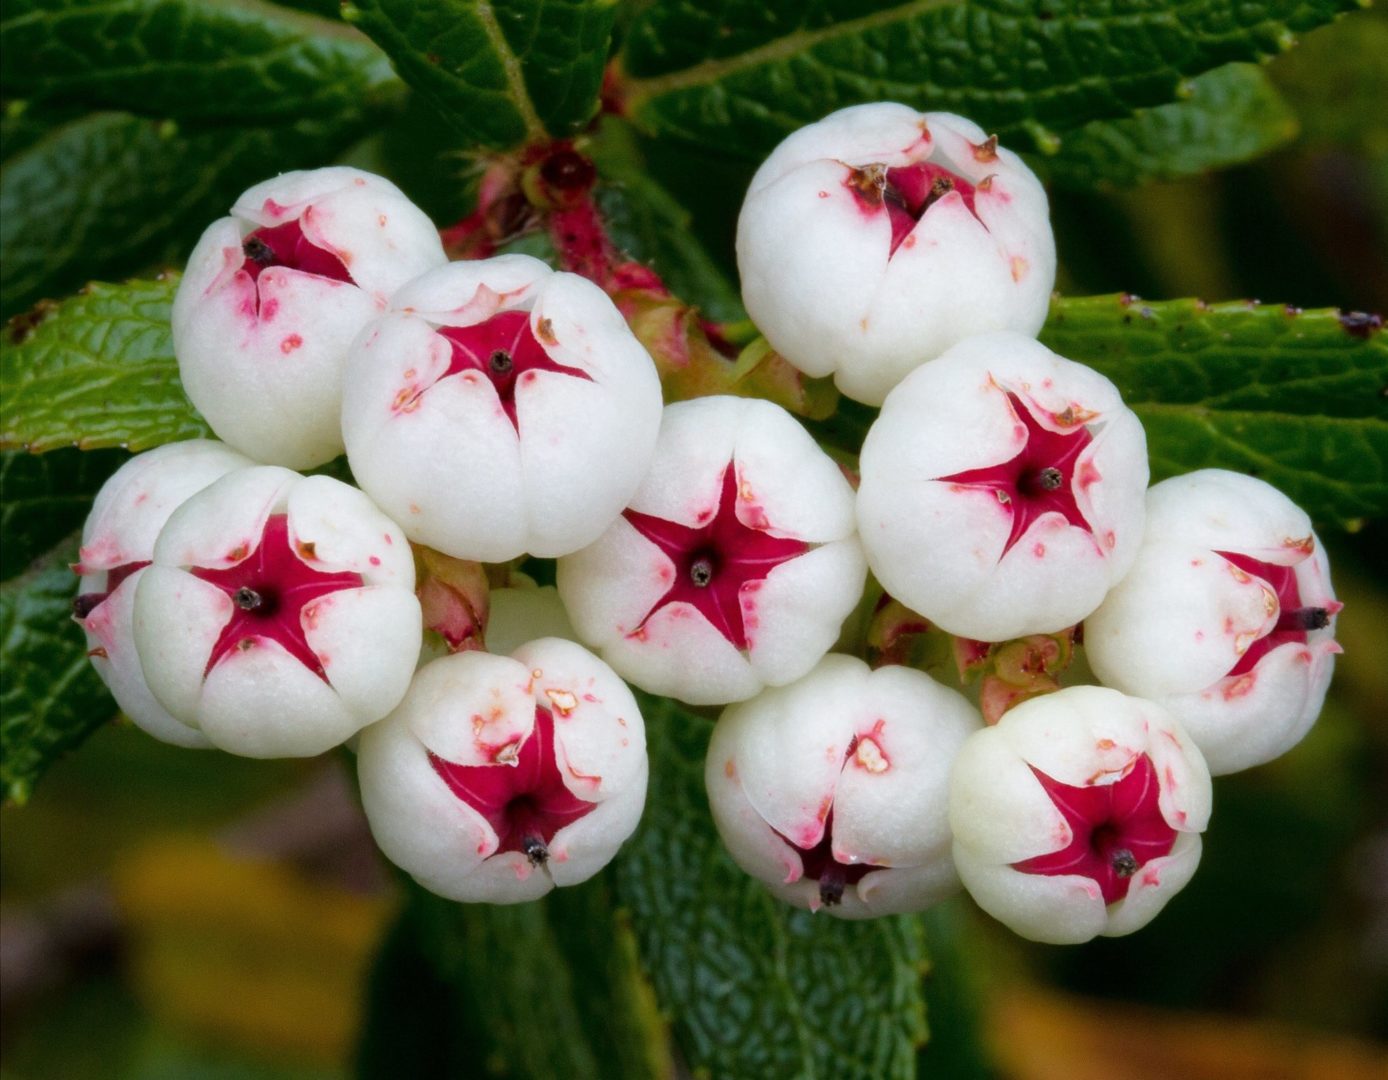 растение с белыми ягодками - гаультерия, или снежноягодник меднолистный